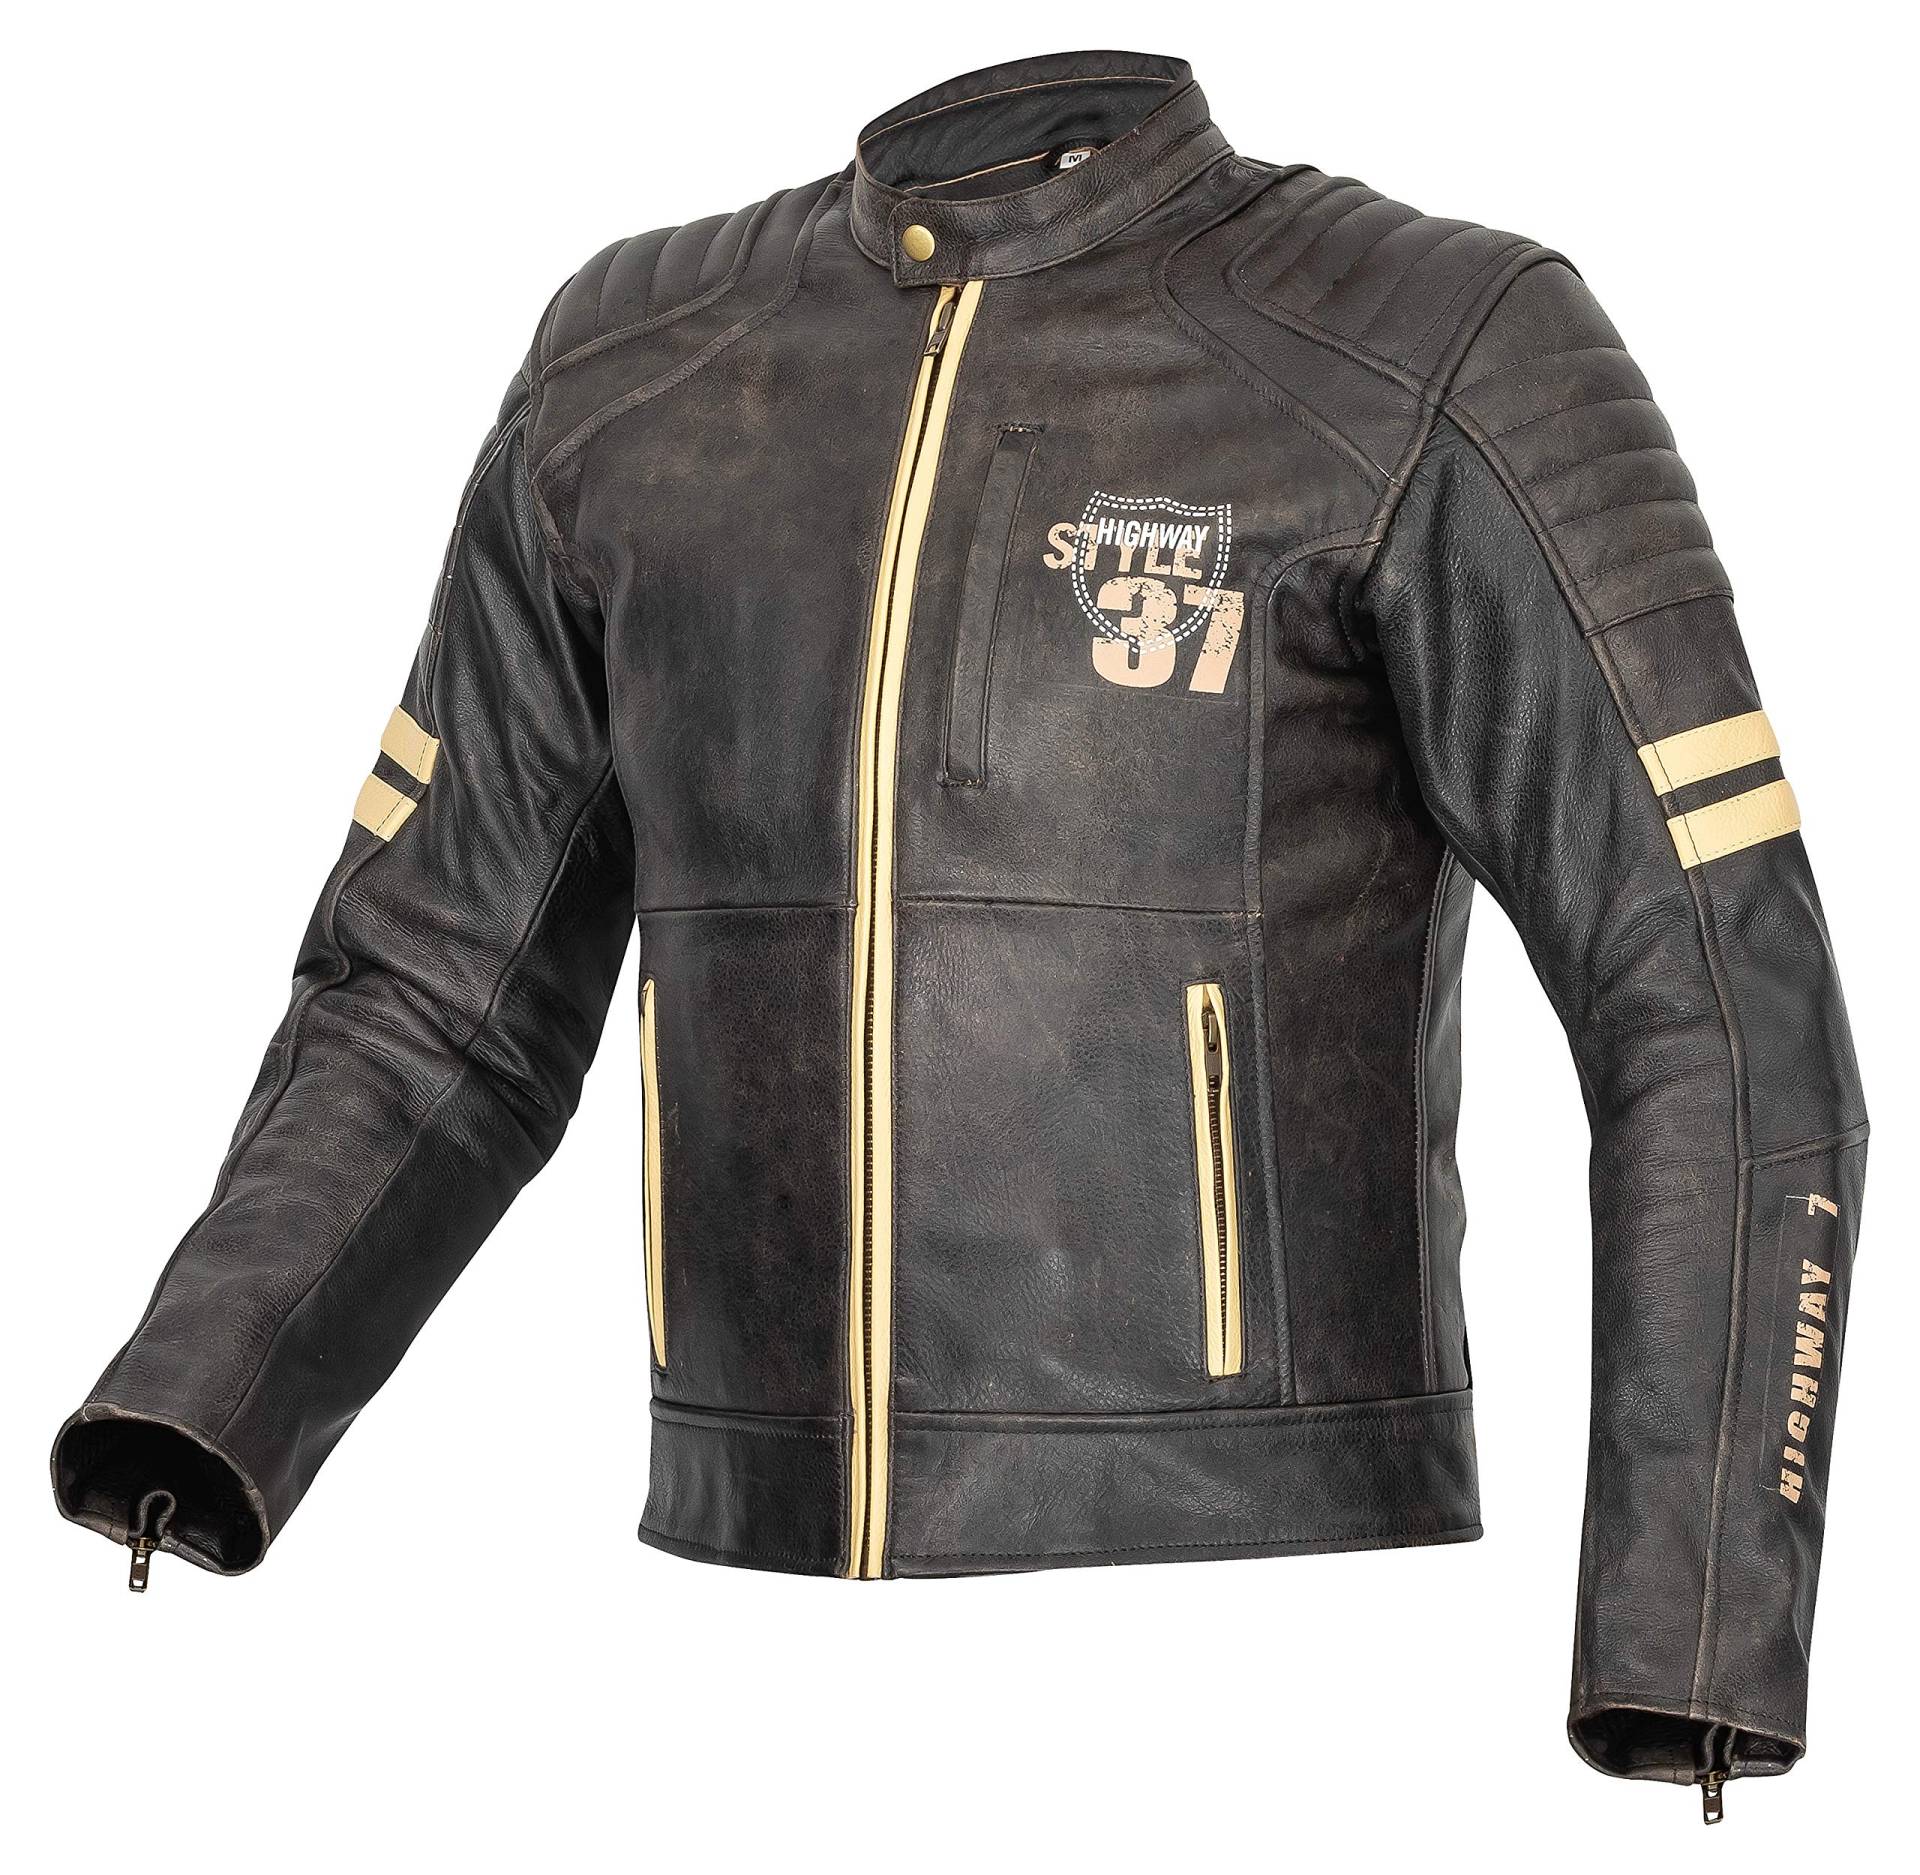 XLS Motorradjacke, Herren, Motorrad Lederjacke in Retro-Look, Echtleder, Vintage Bikerjacke, Grau, Chopper Jacke (XL) von XLS